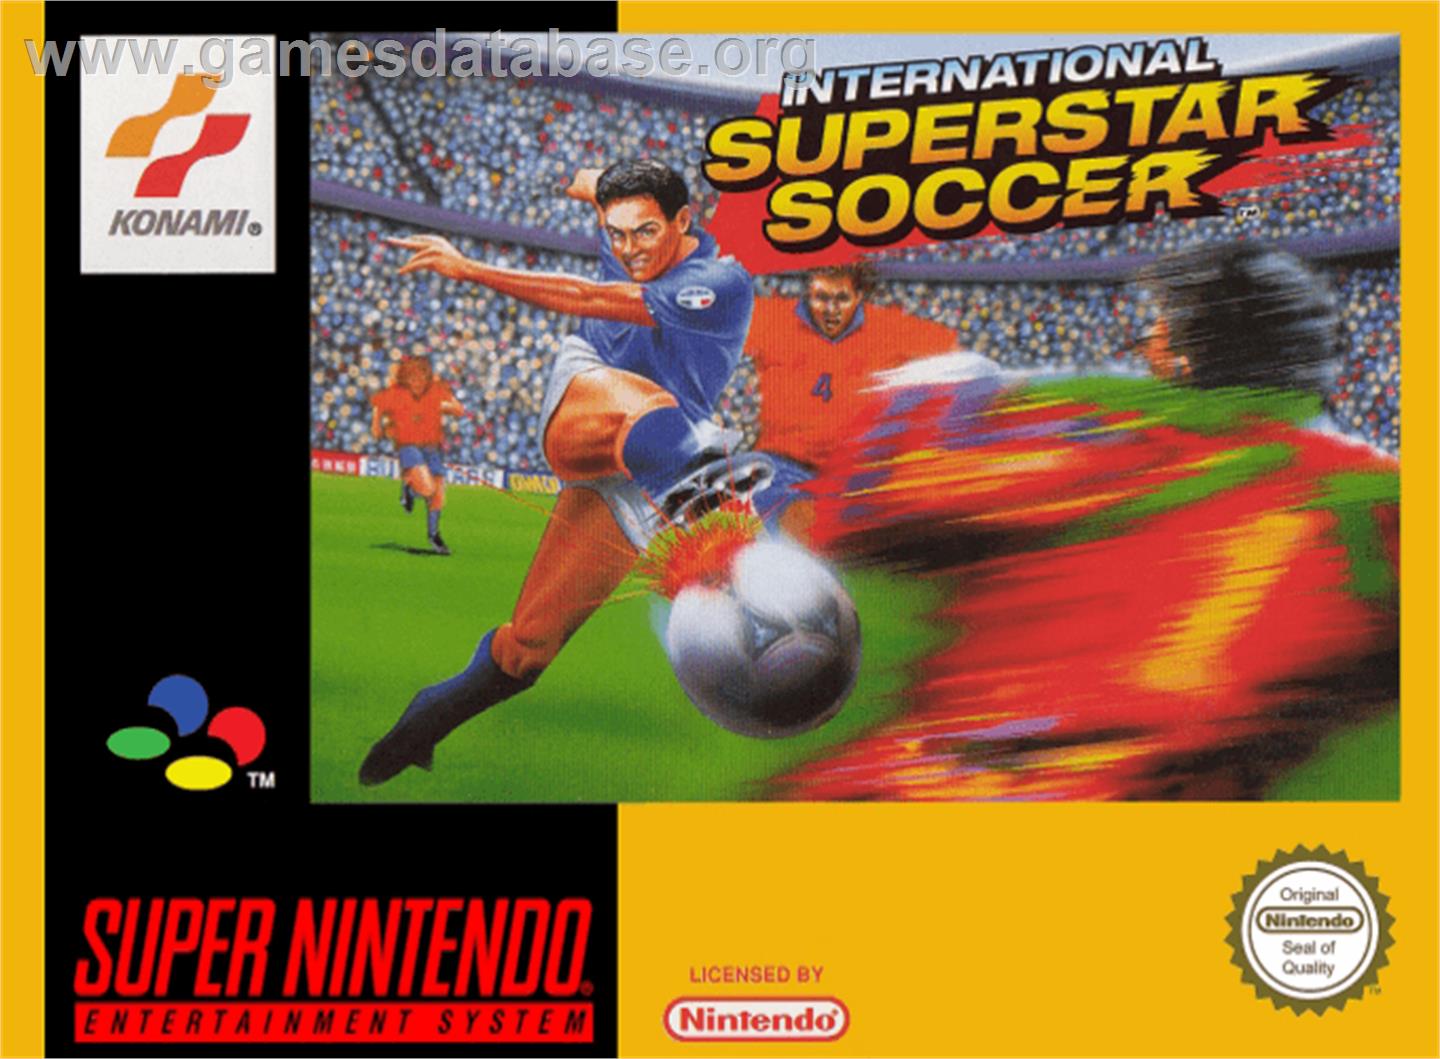 International Superstar Soccer - Nintendo SNES - Artwork - Box